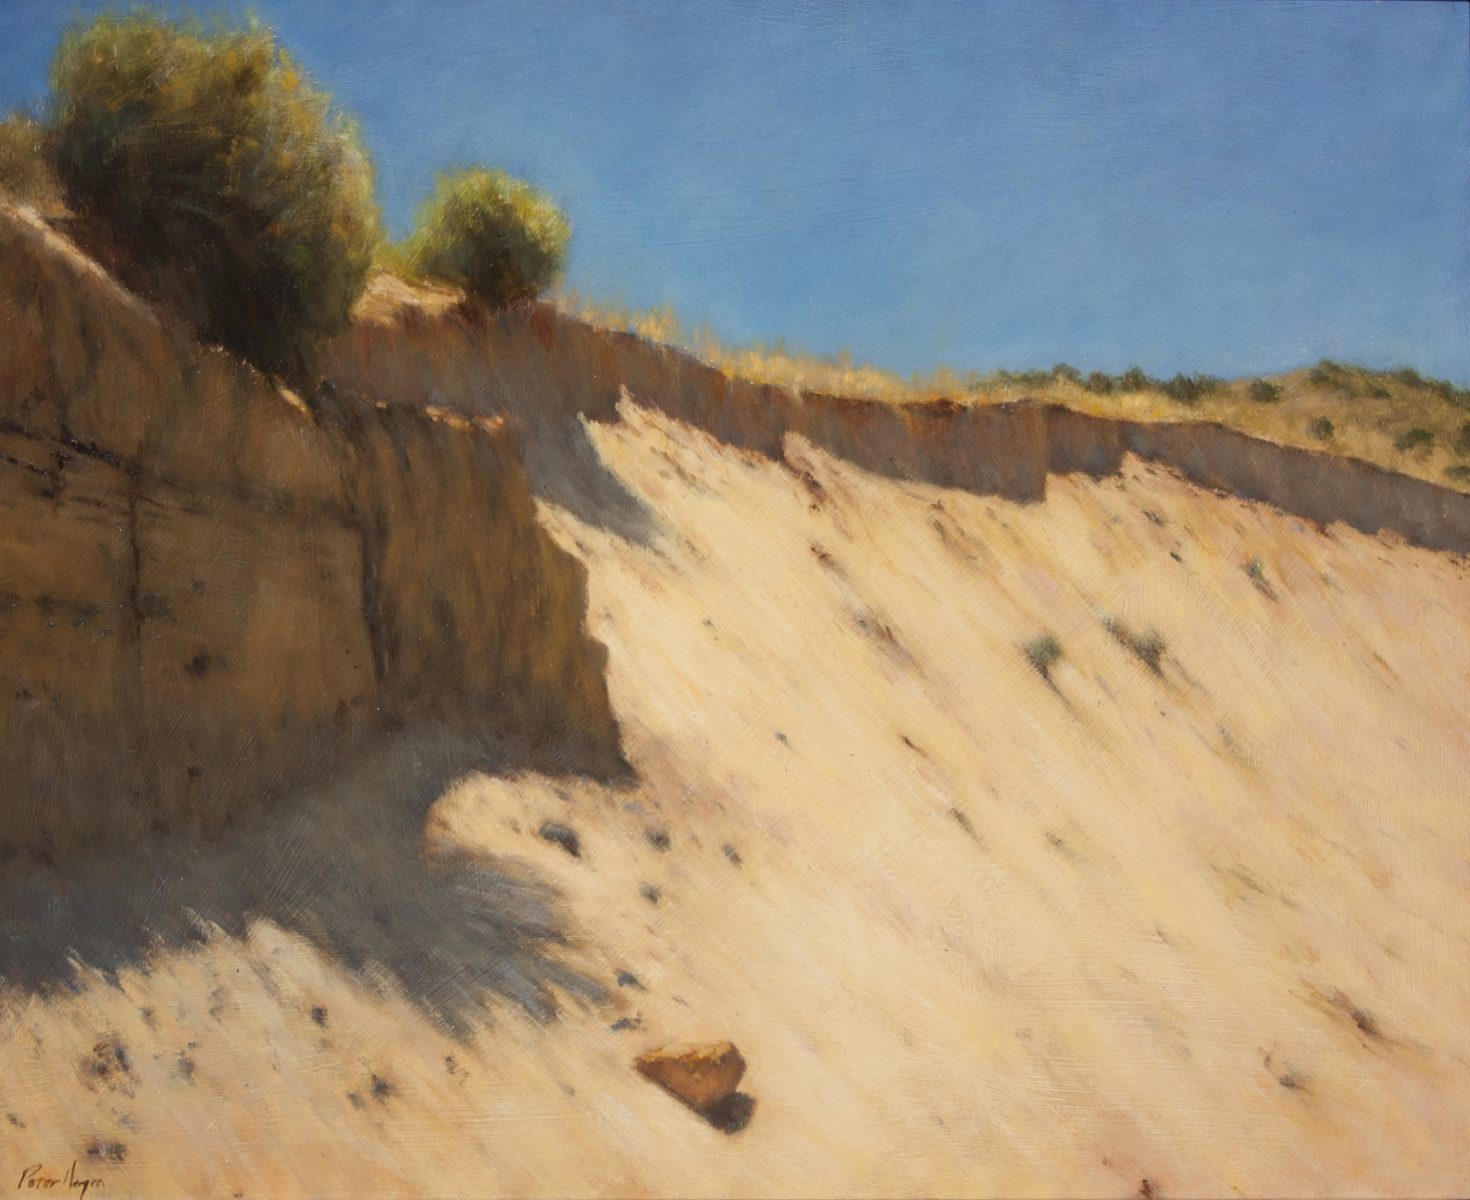 Sand Bank Arroyo by Peter Hagen